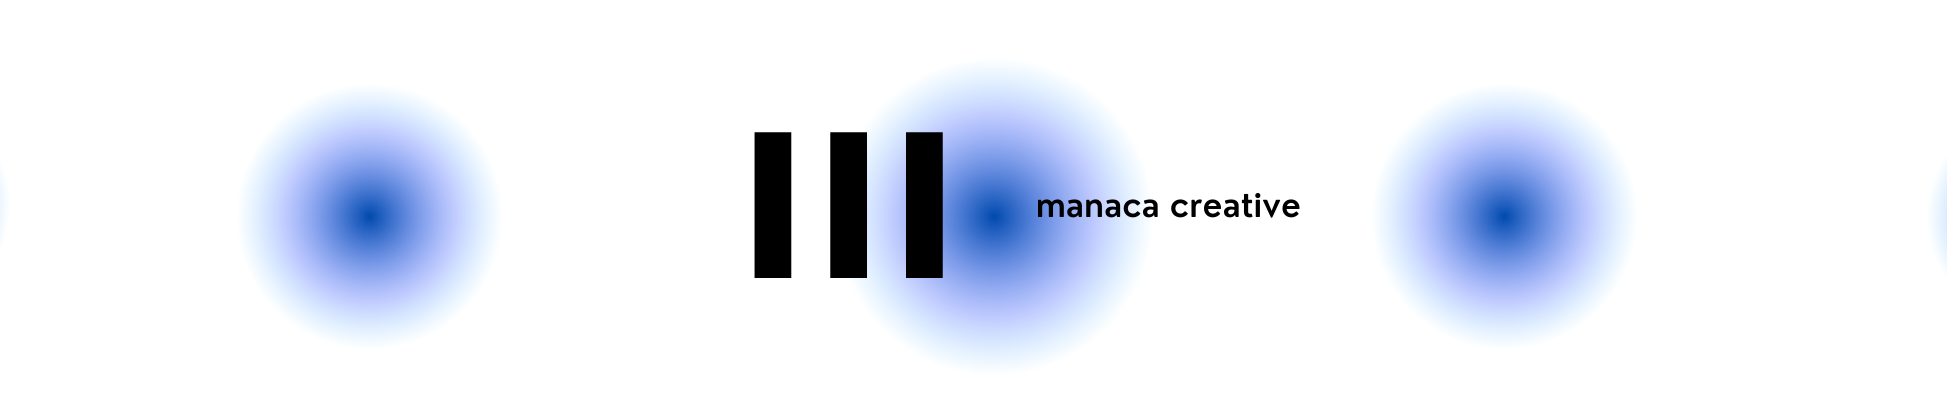 manaca creative profil başlığı